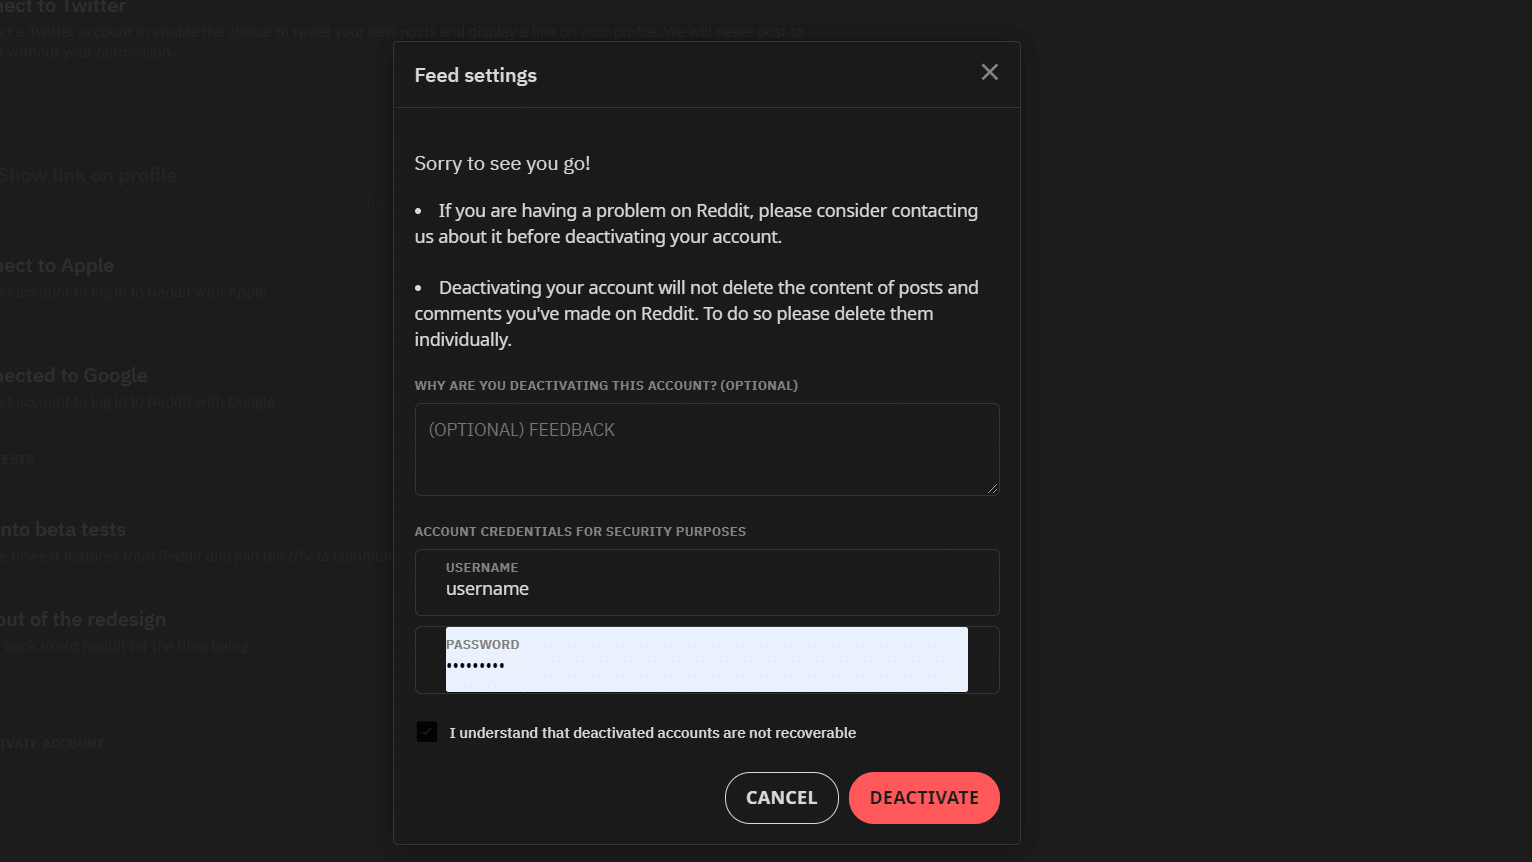 Delete Your Reddit Account: Deactivate option